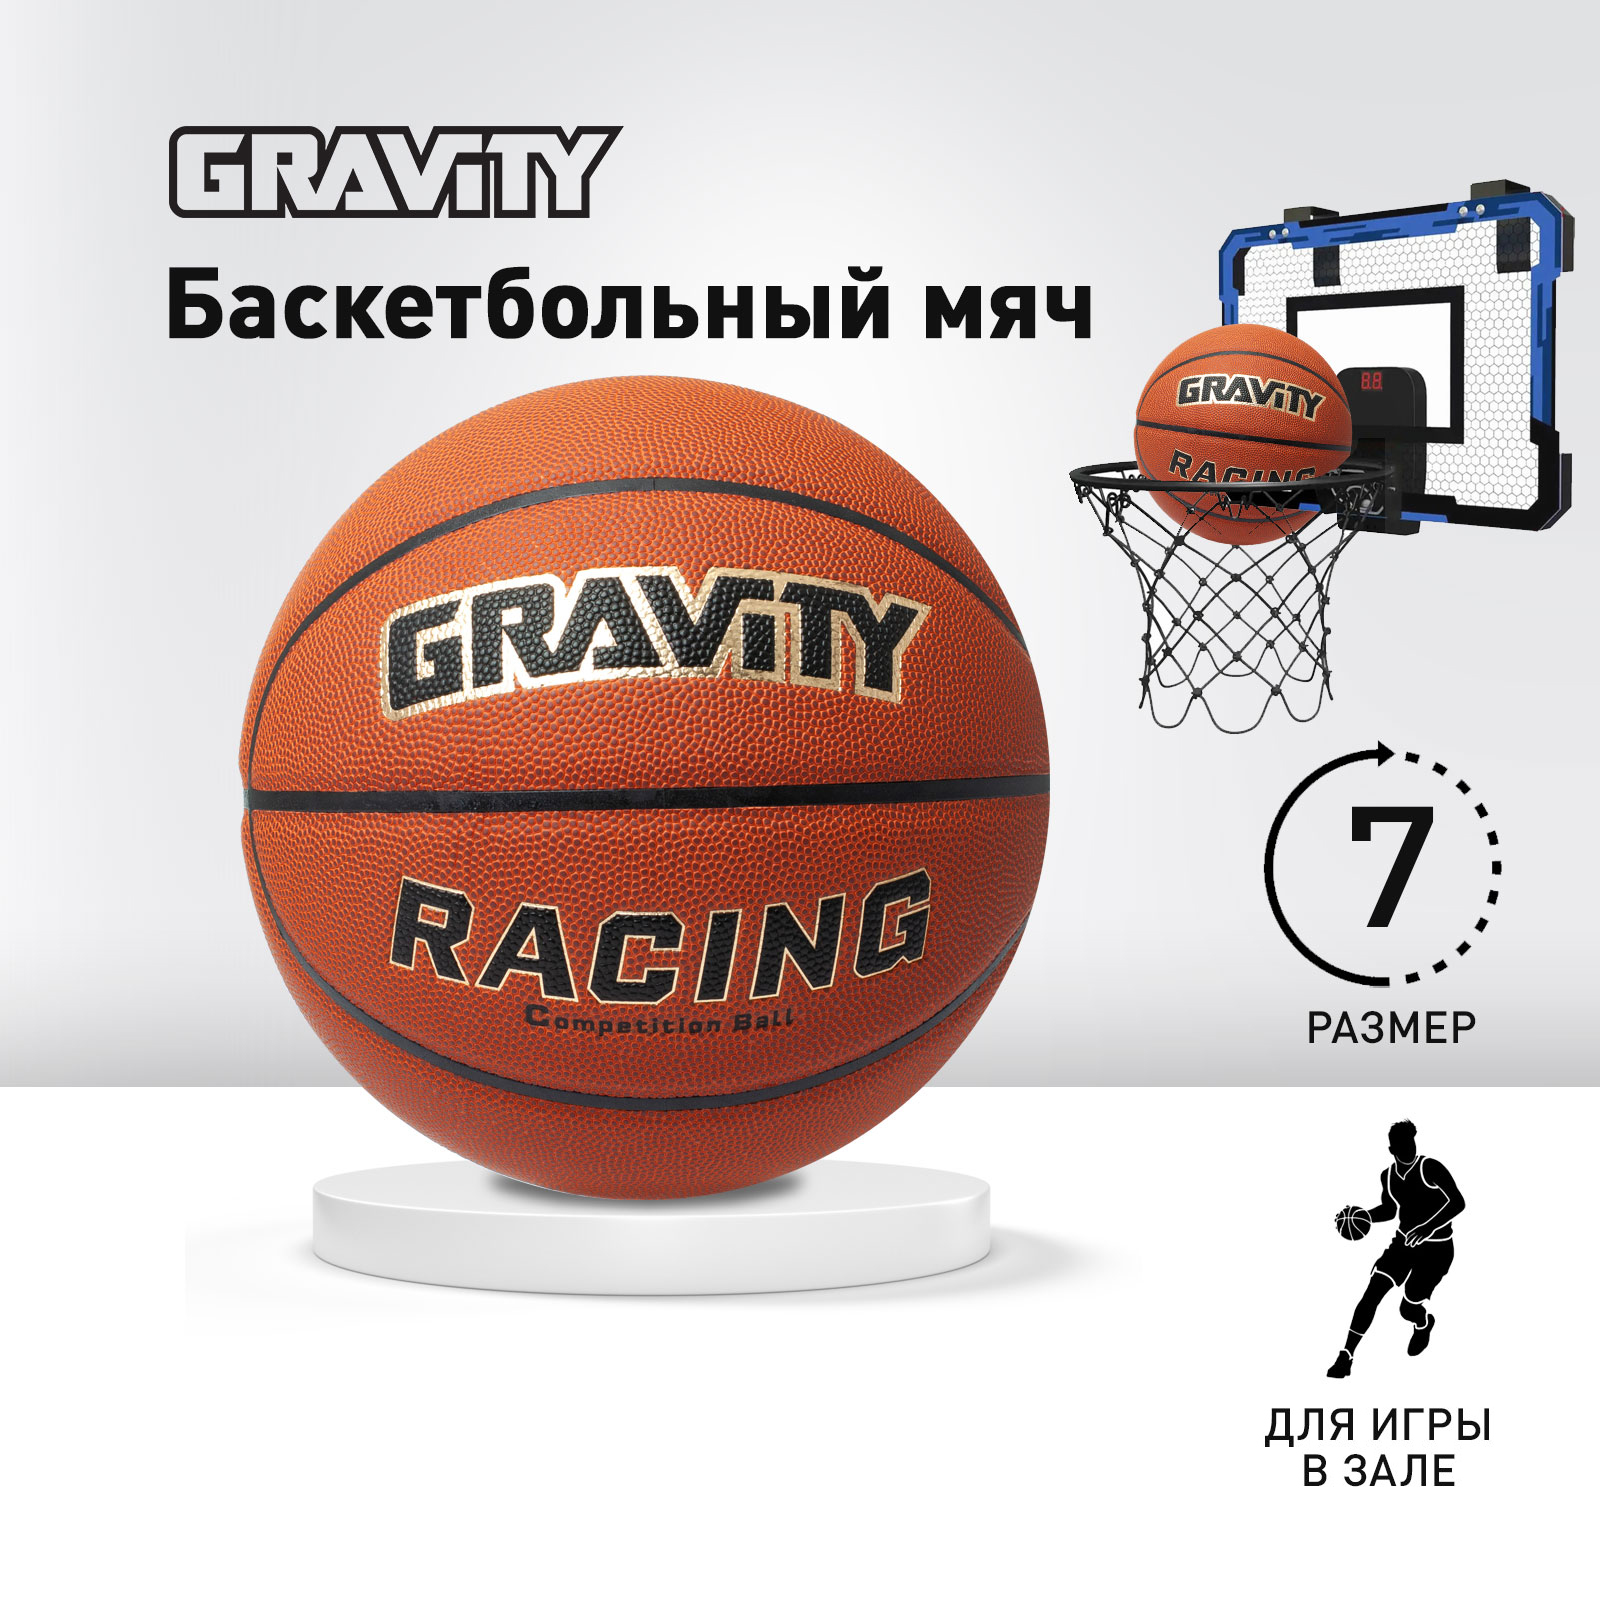 Баскетбольный мяч Gravity RACING, соревновательный, размер 7